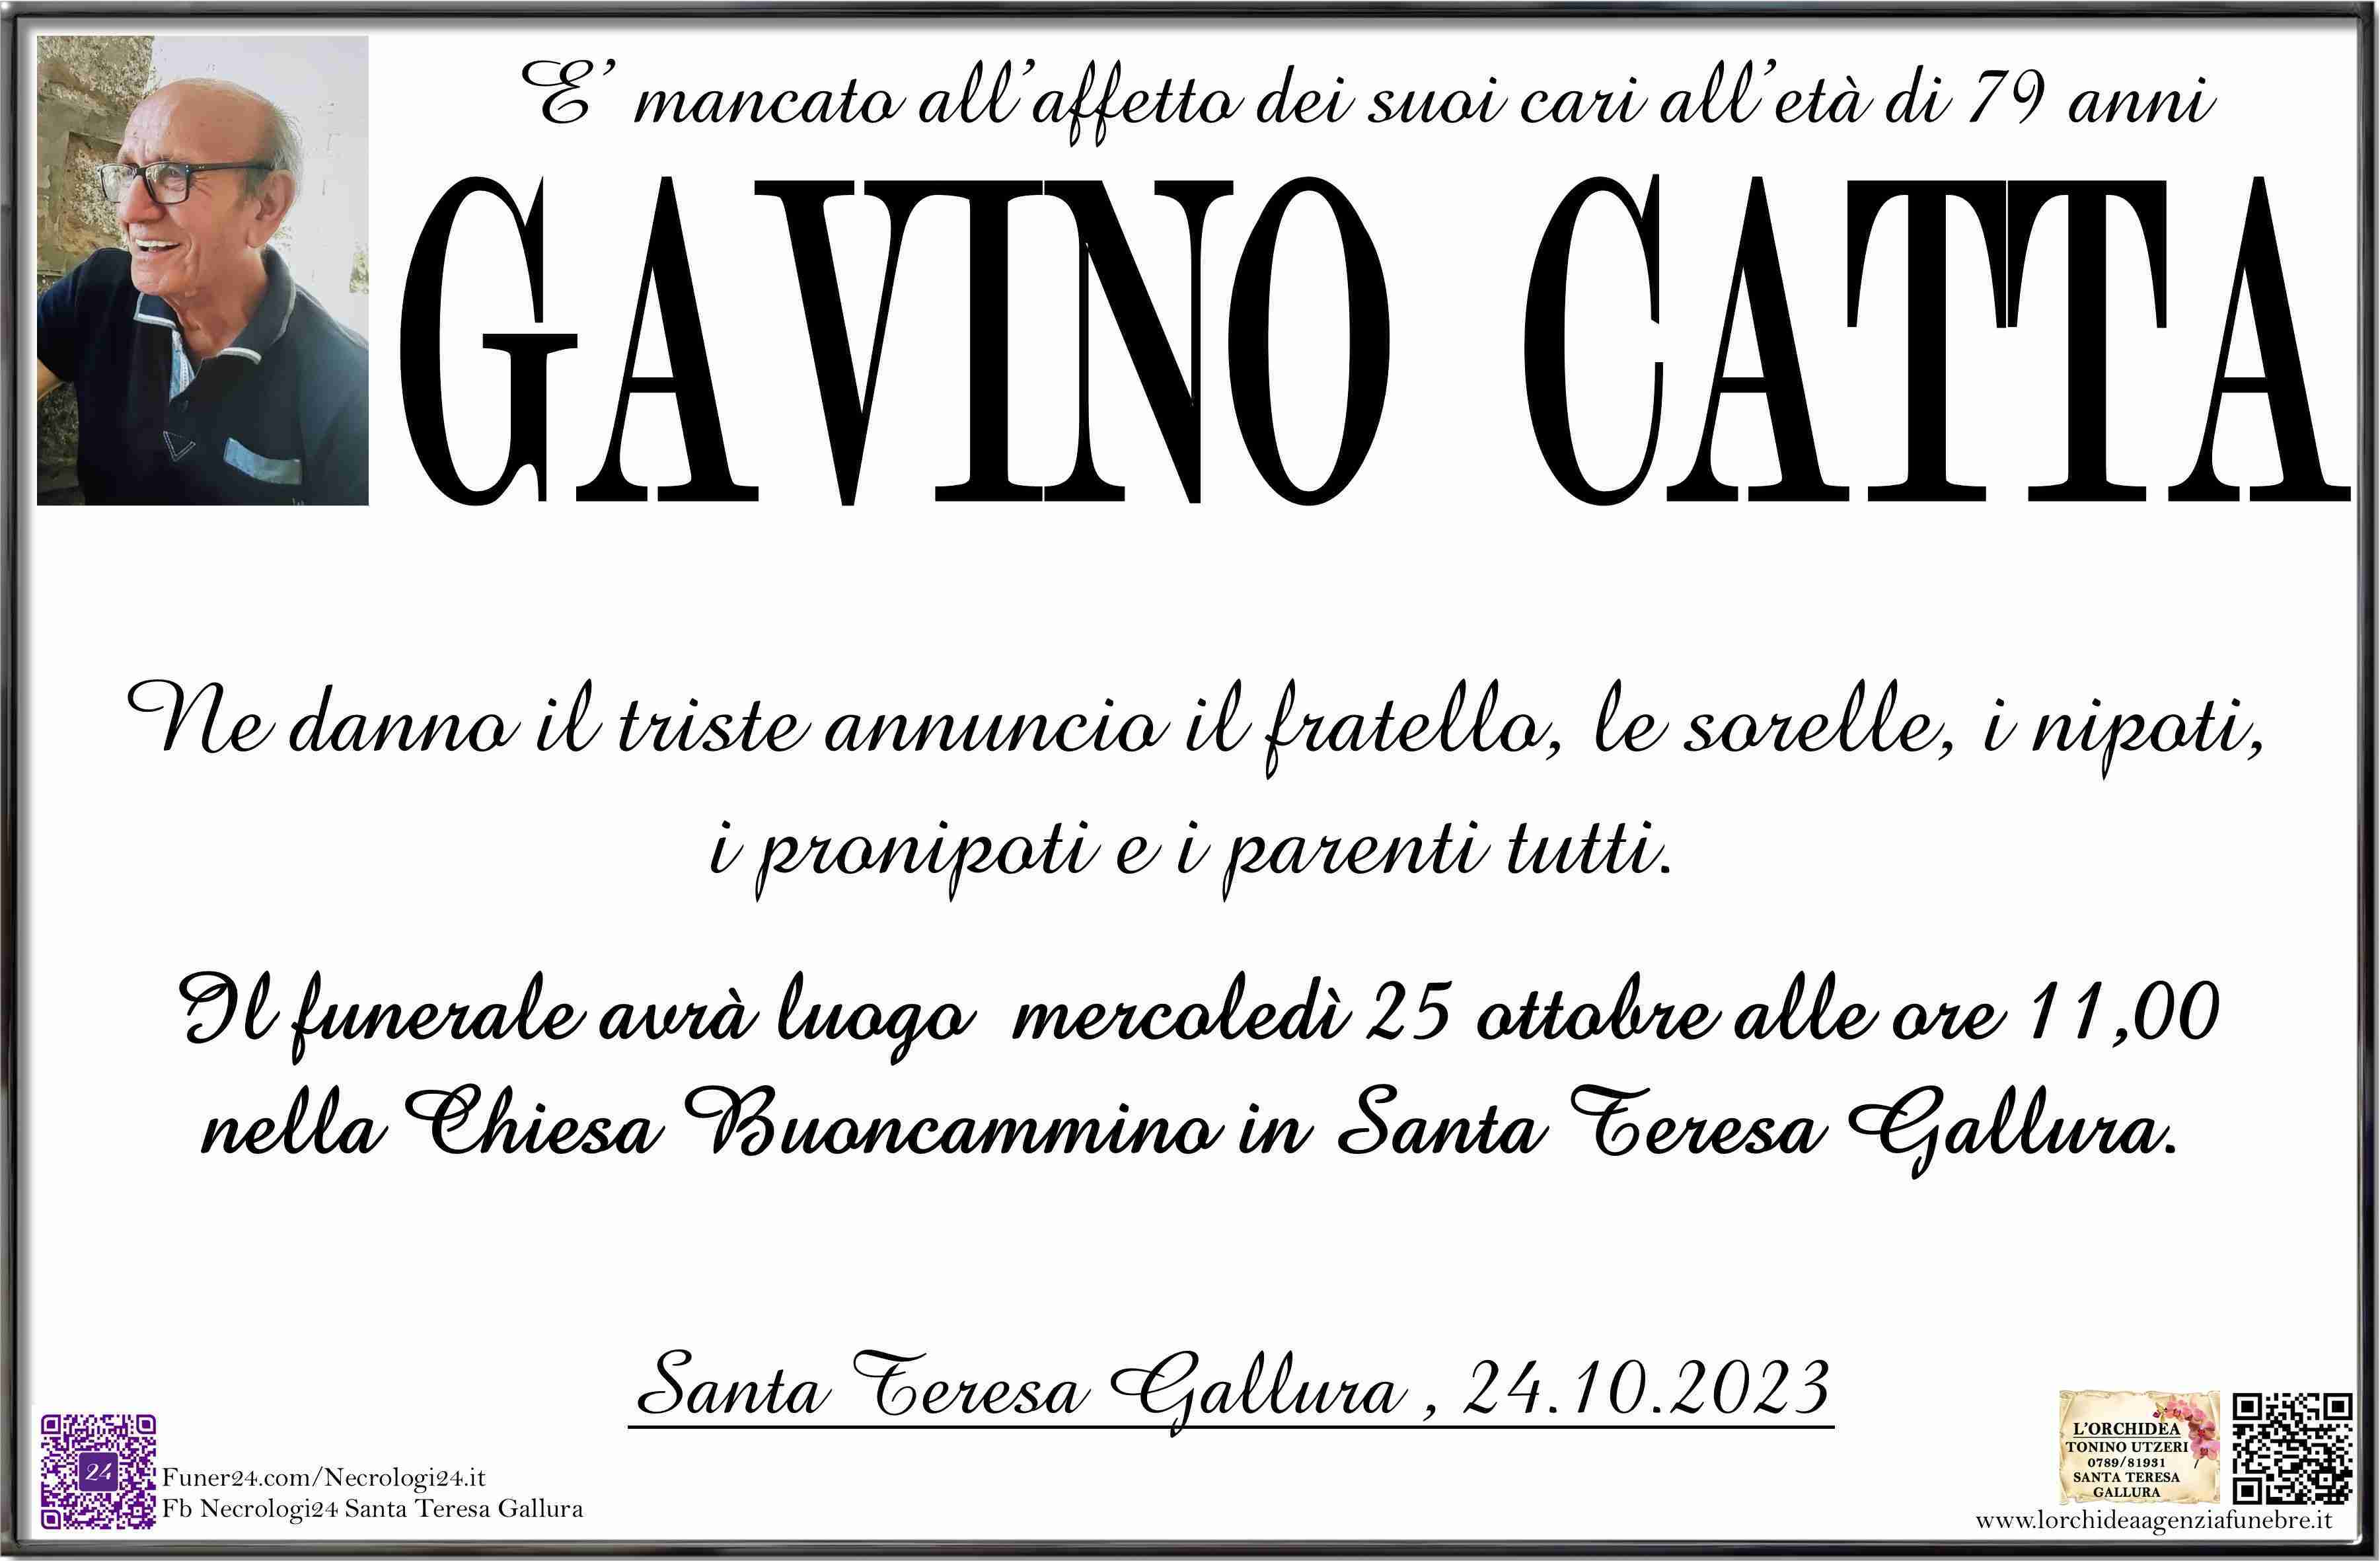 Gavino Catta